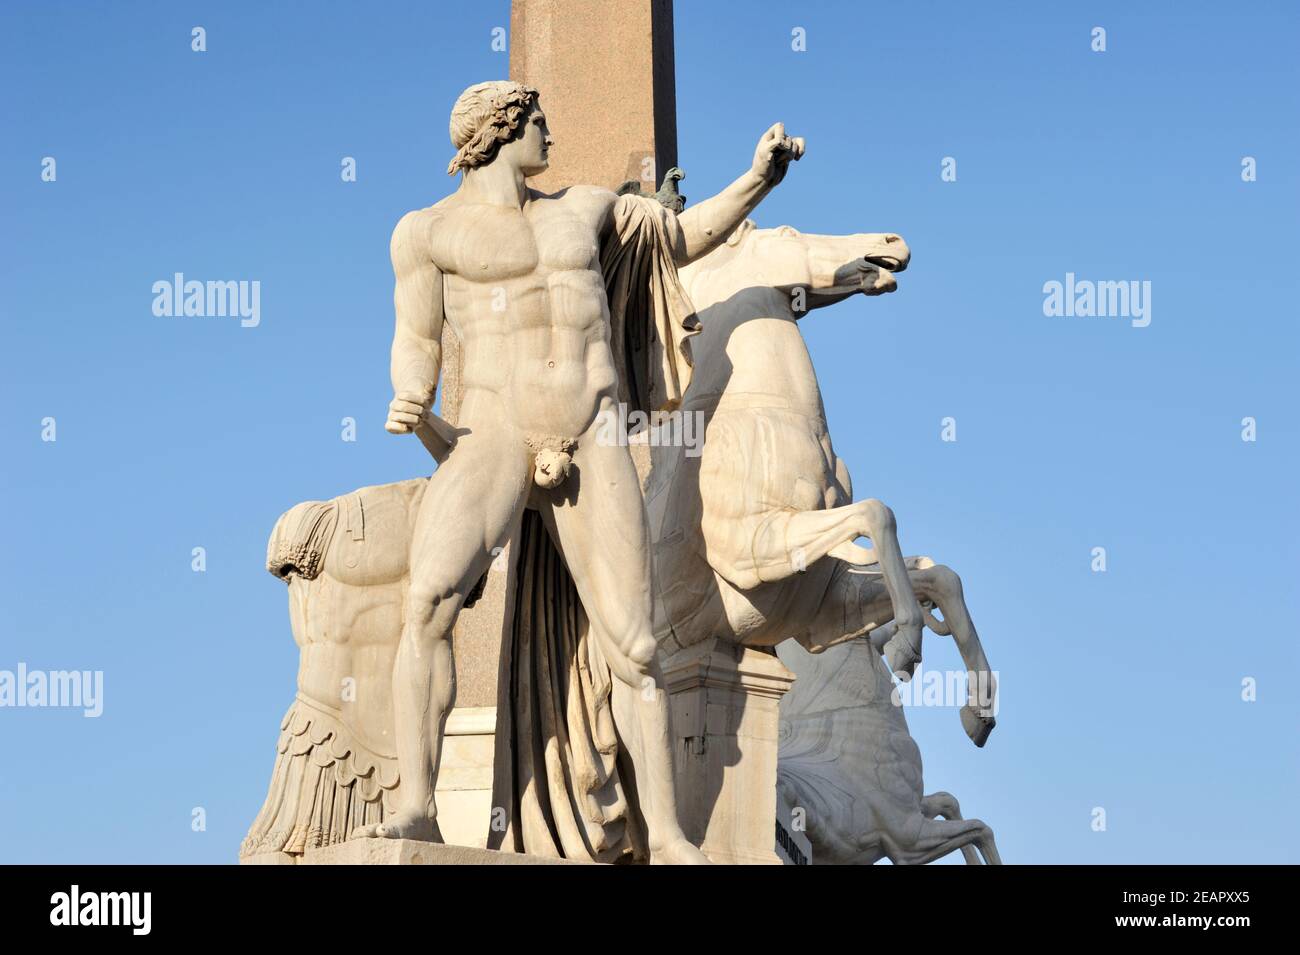 Italie, Rome, fontaine de Monte Cavallo avec les statues de Castor et Pollux Banque D'Images